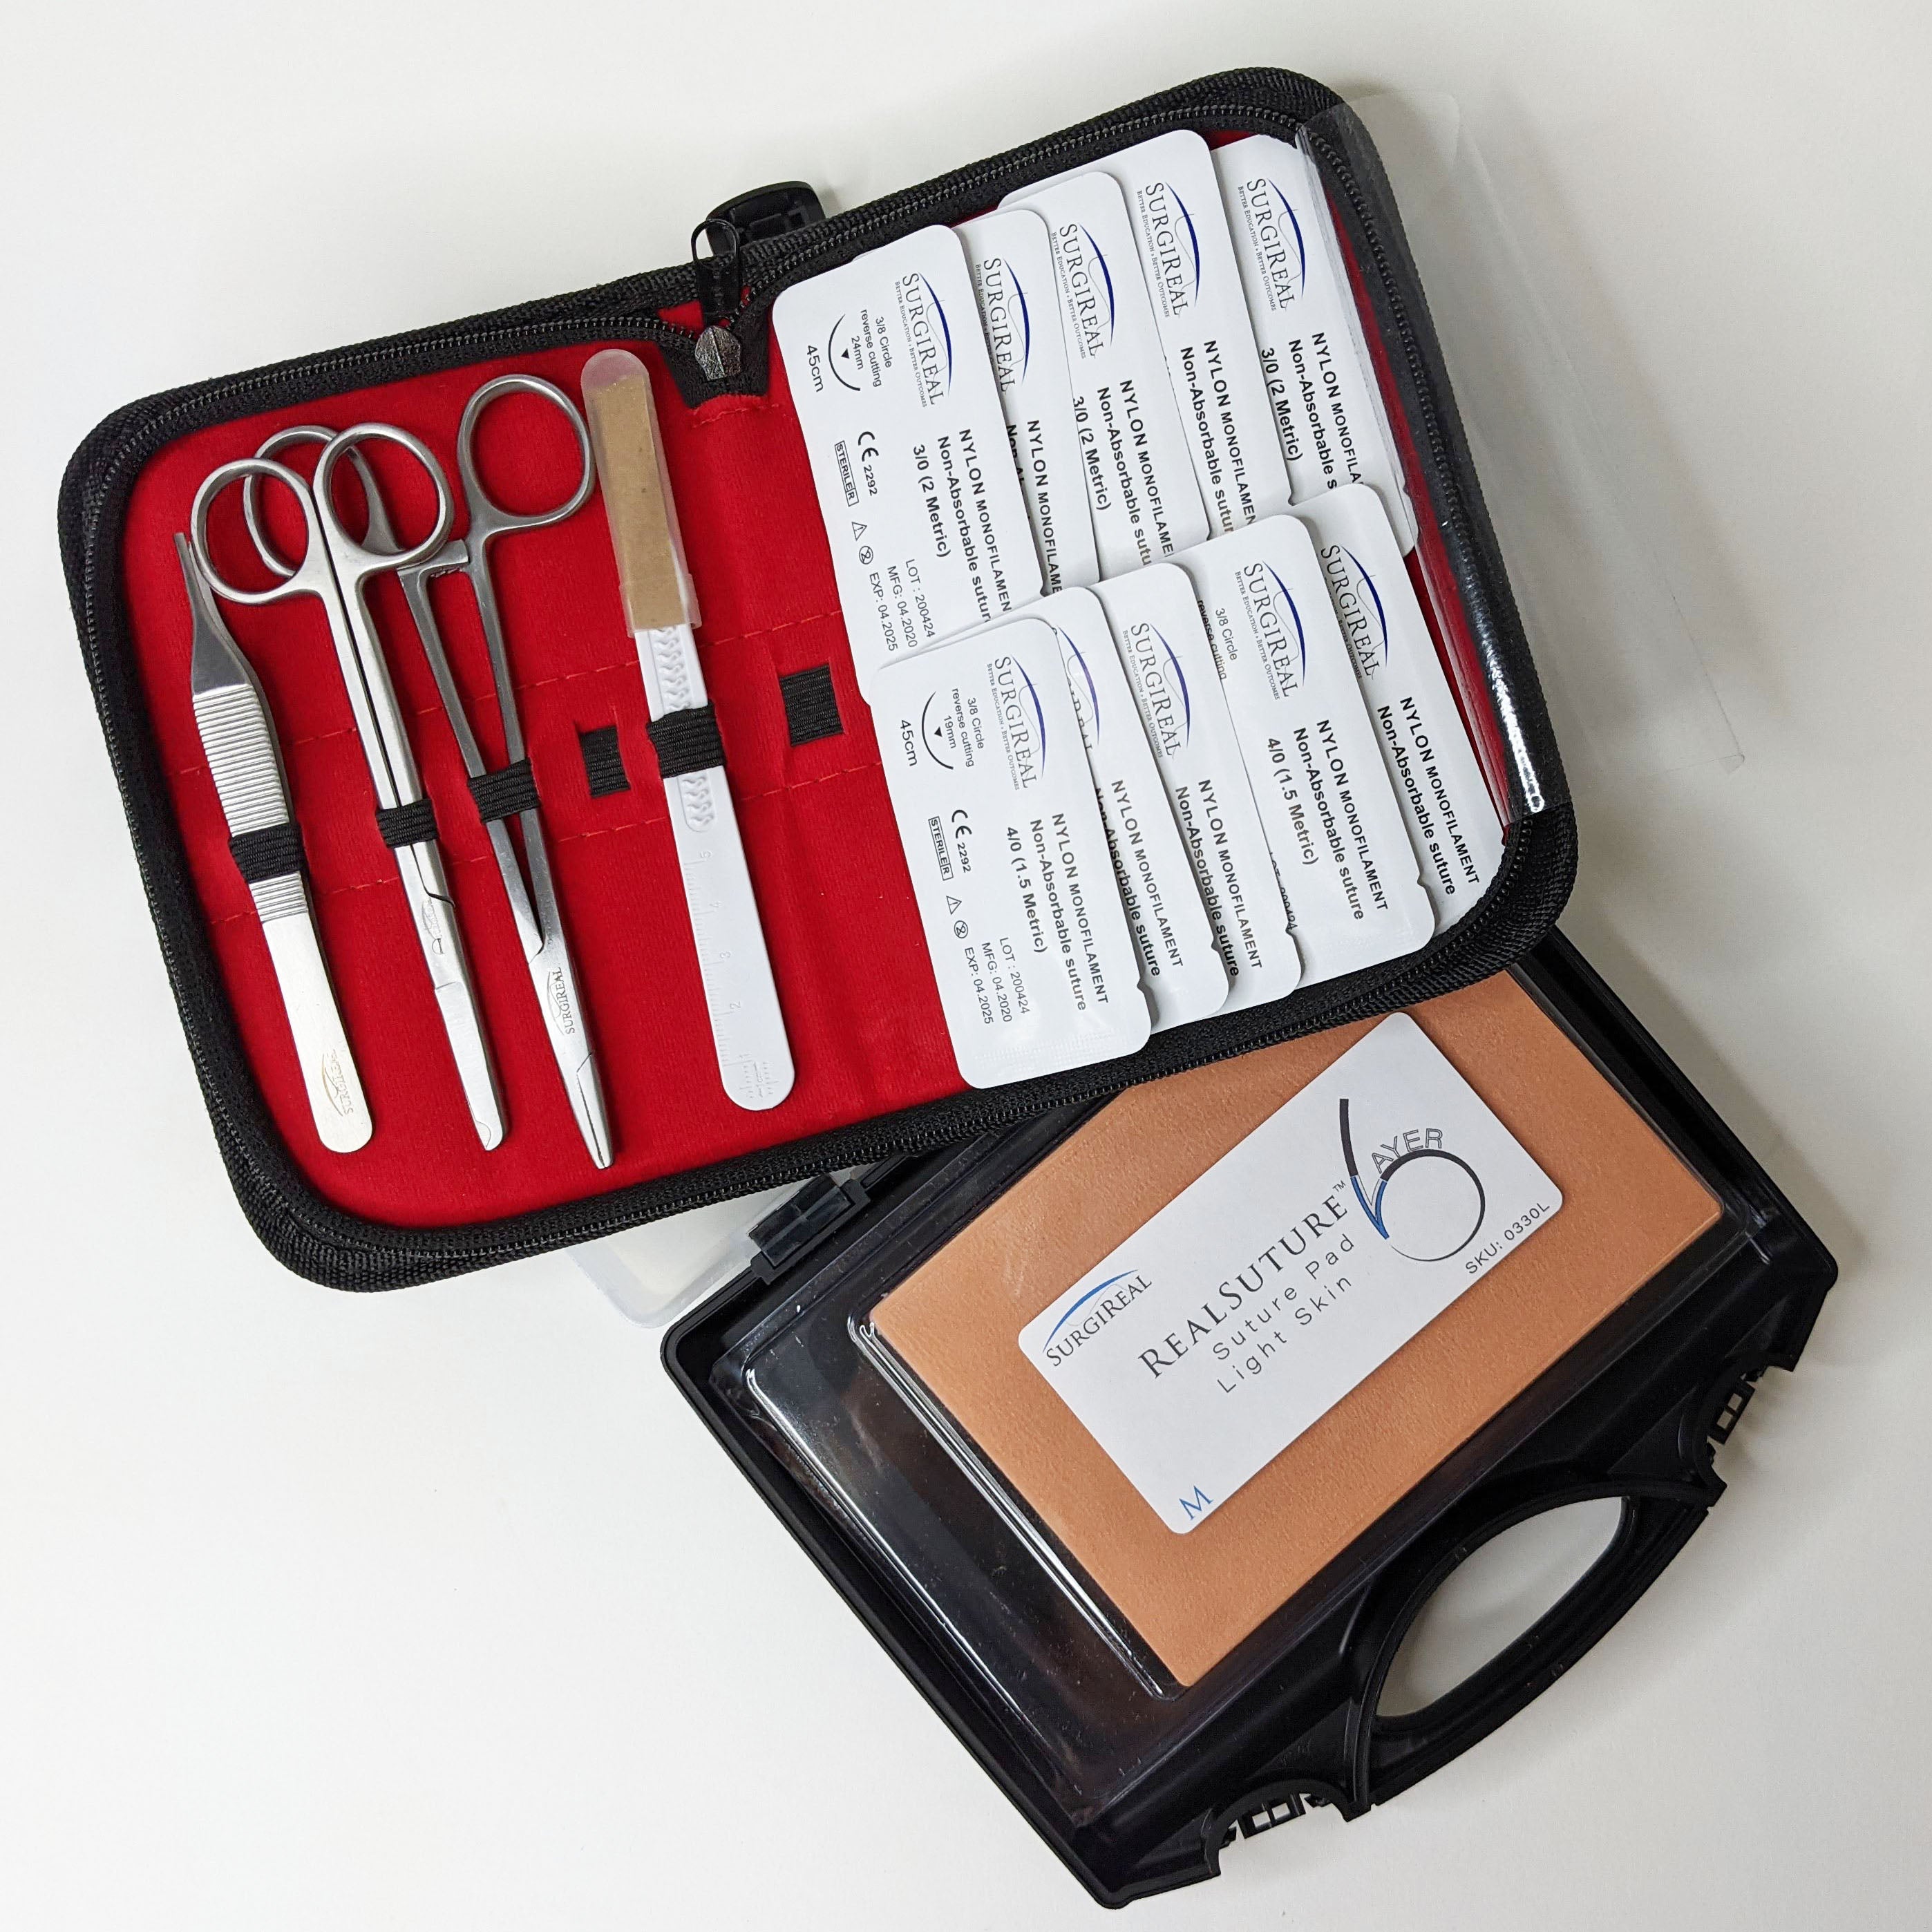 Kit de entrenamiento de sutura de 6 capas RealSuture mediano